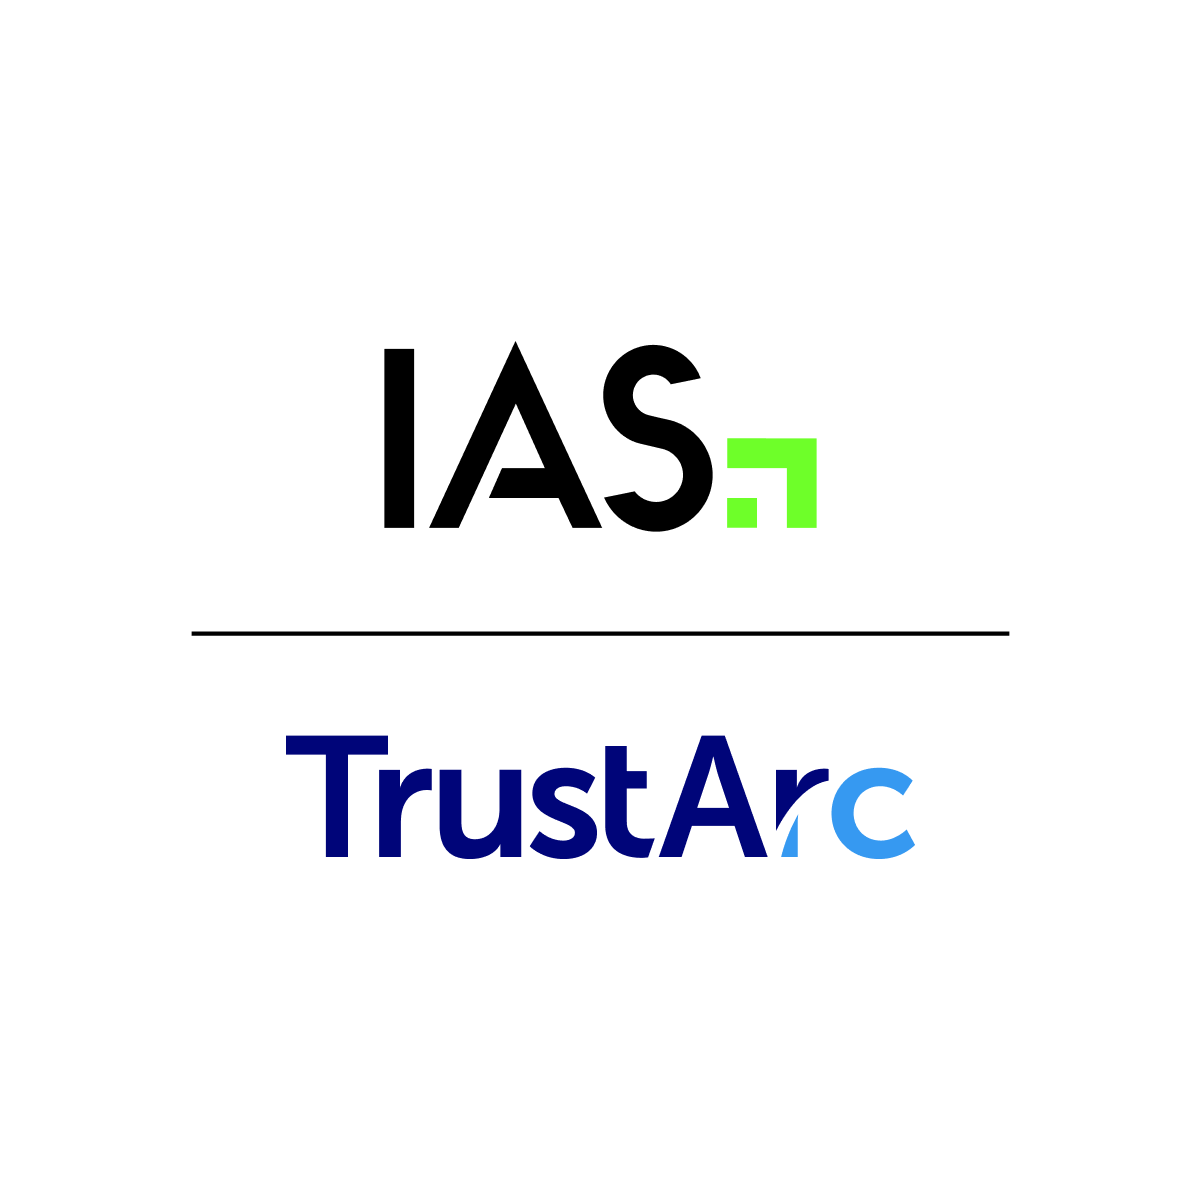 IAS and TrustArc logos.